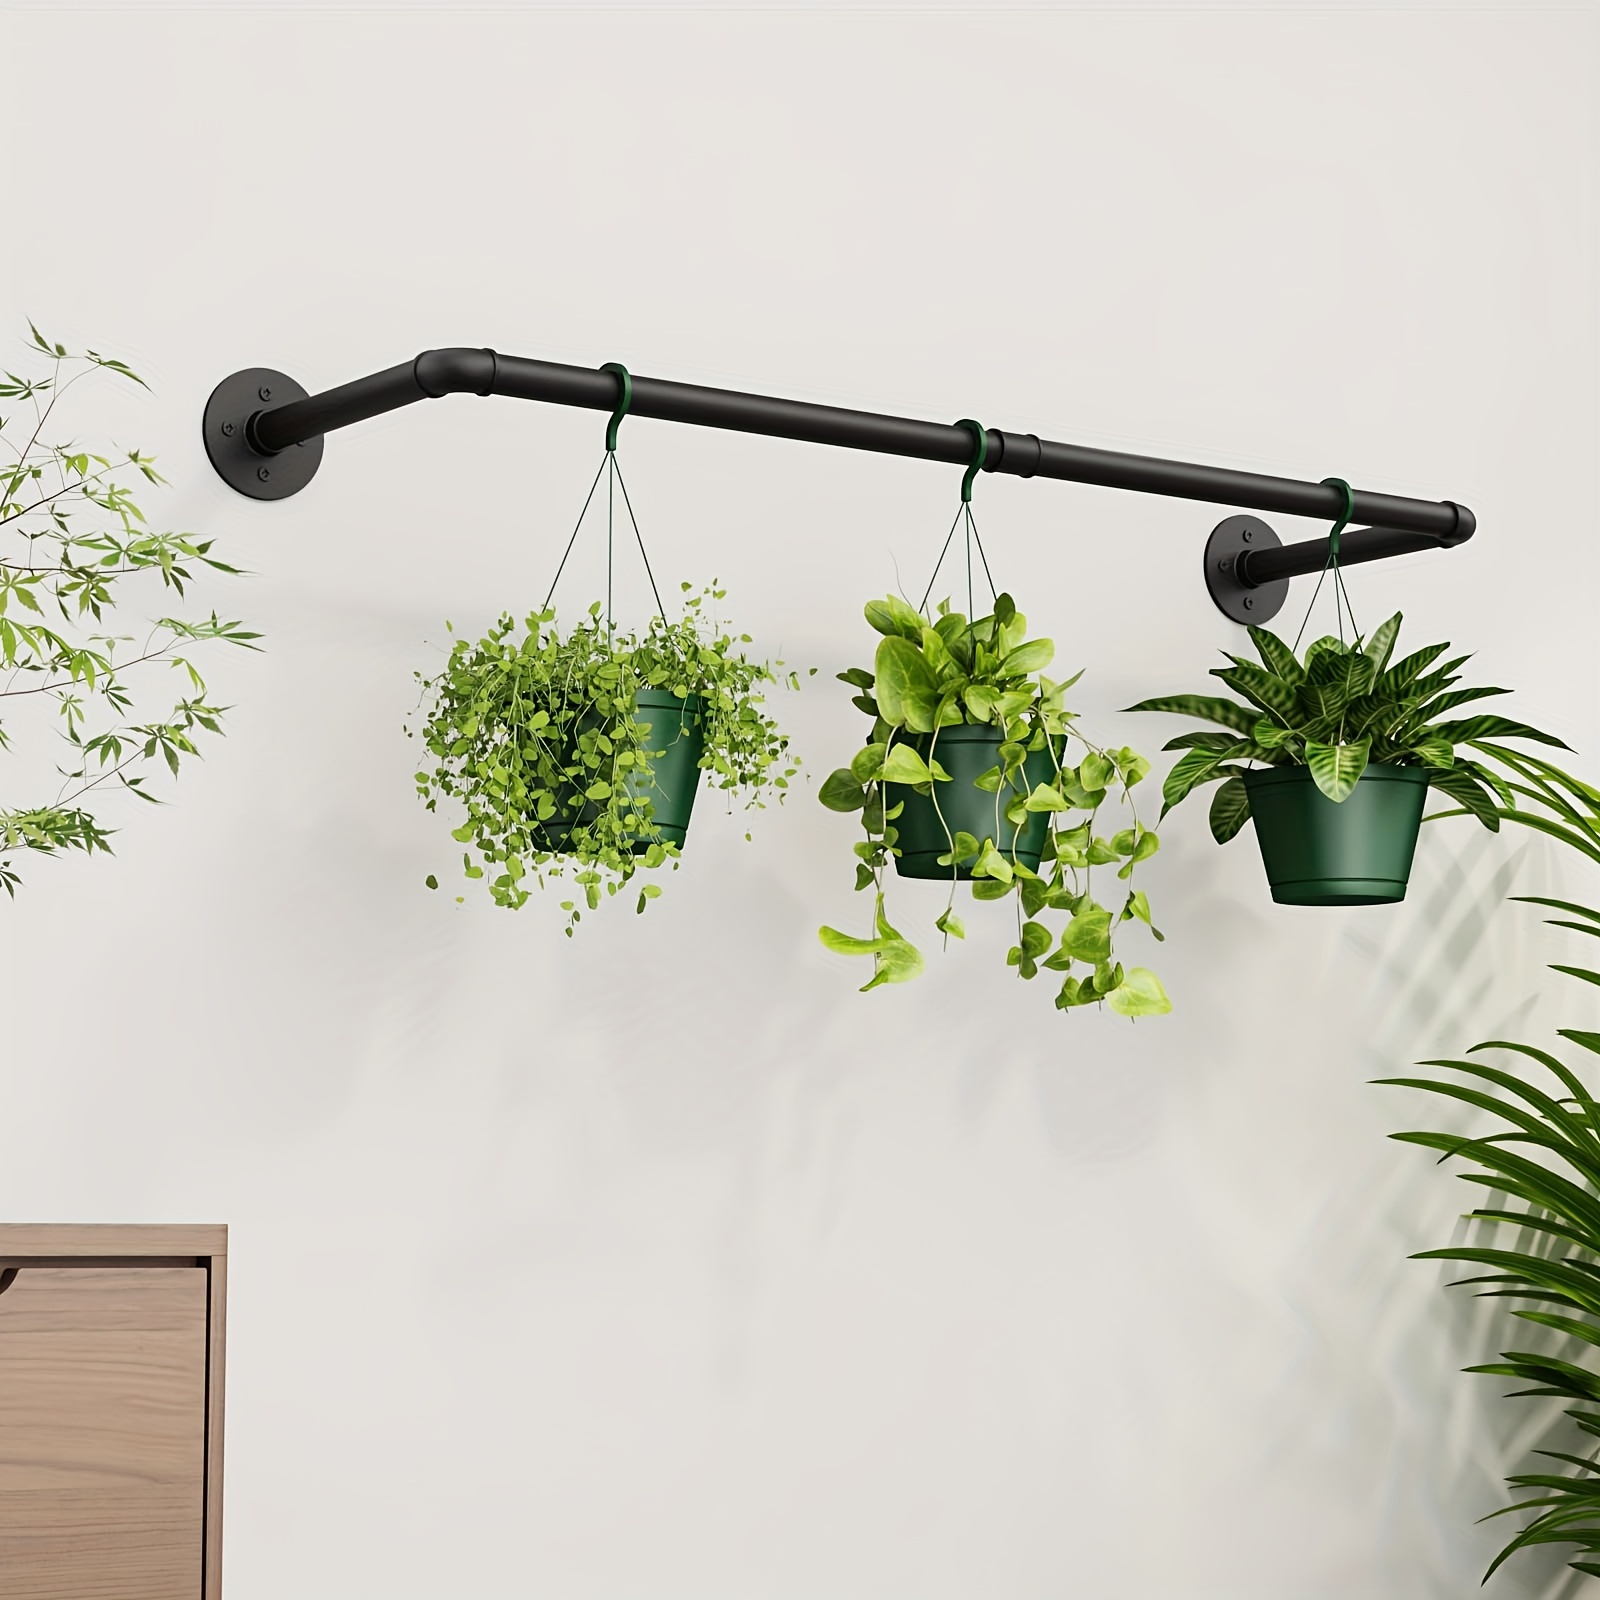 1個、屋内植物用吊り下げプランター 窓の天井と壁の装飾用植物ホルダー